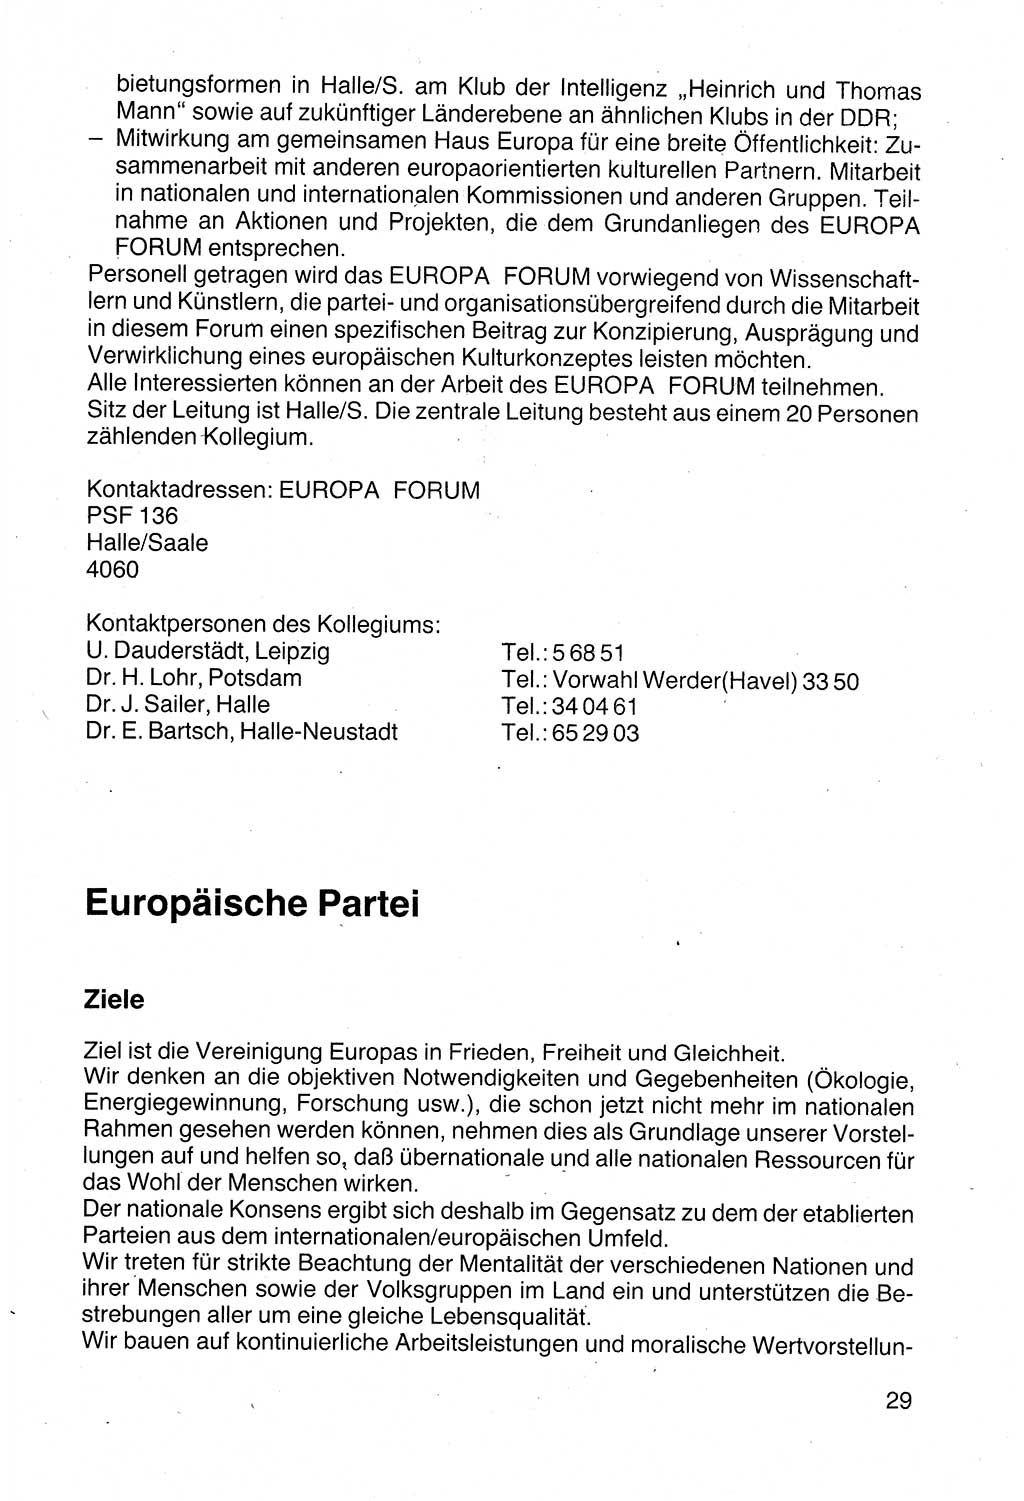 Politische Parteien und Bewegungen der DDR (Deutsche Demokratische Republik) über sich selbst 1990, Seite 29 (Pol. Part. Bew. DDR 1990, S. 29)